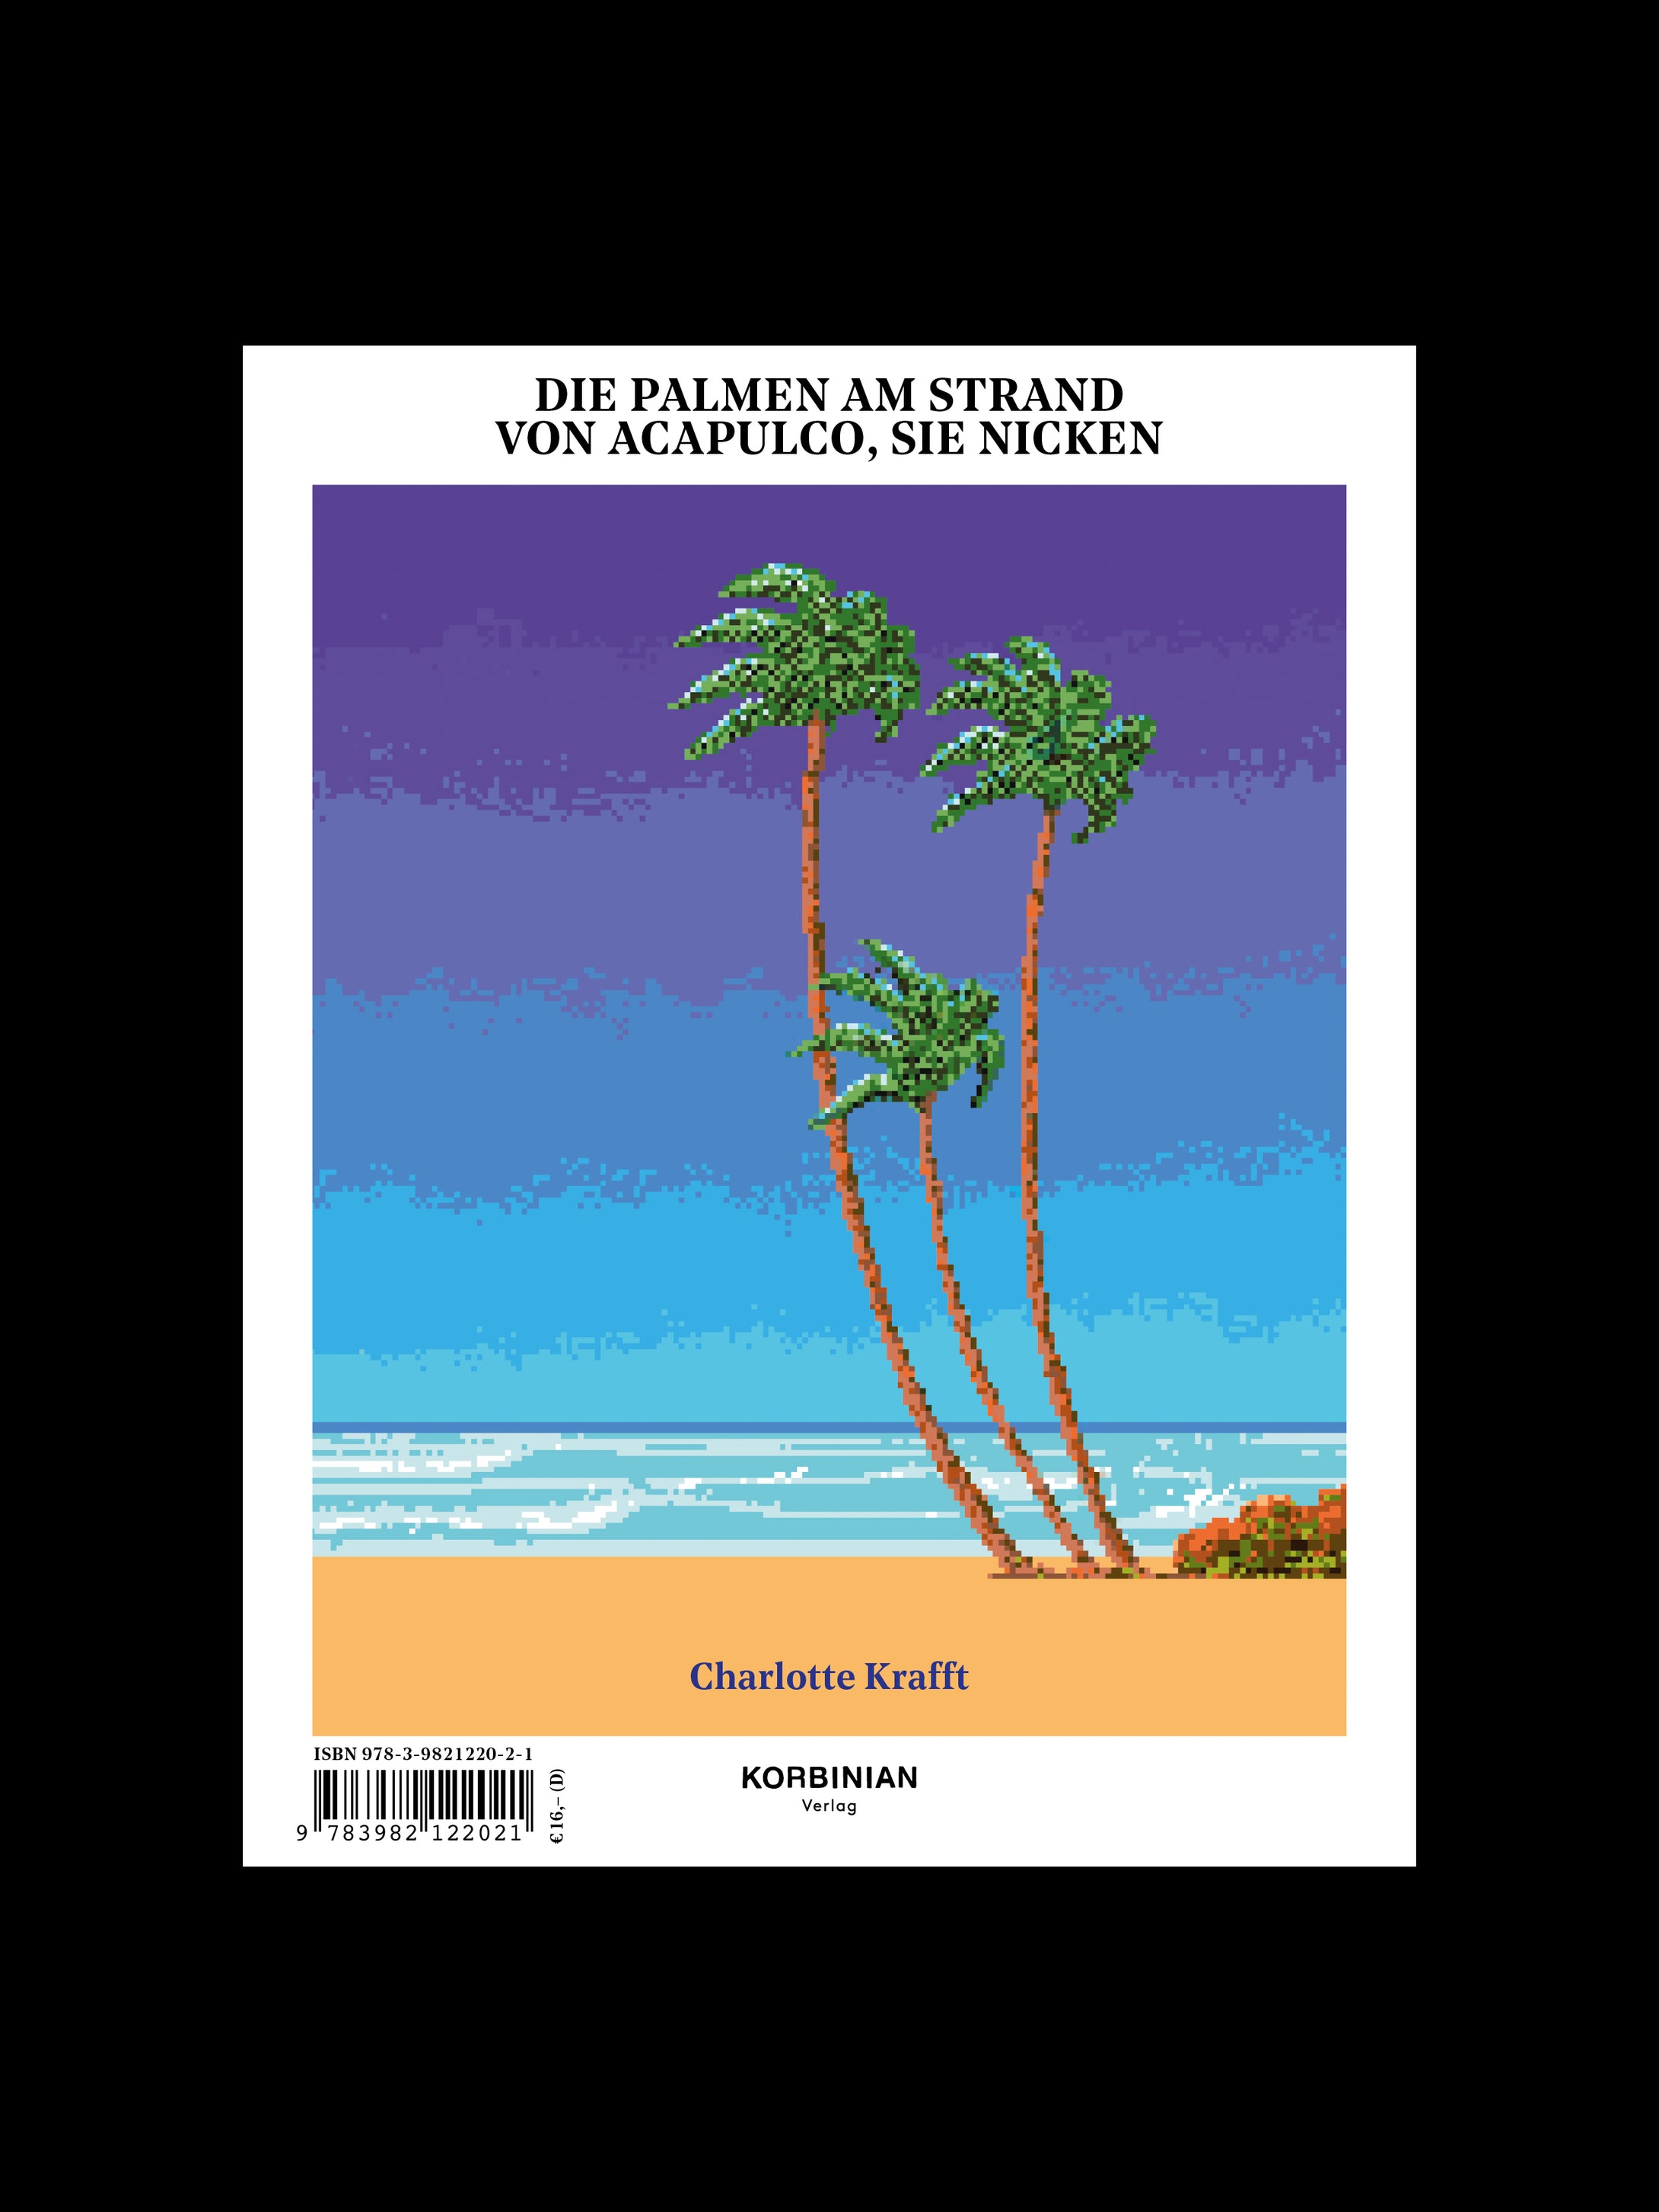 Die Palmen am Strand von Acapulco, sie nicken / Eine endlose Geschichte über den Tod in einer fremden Welt